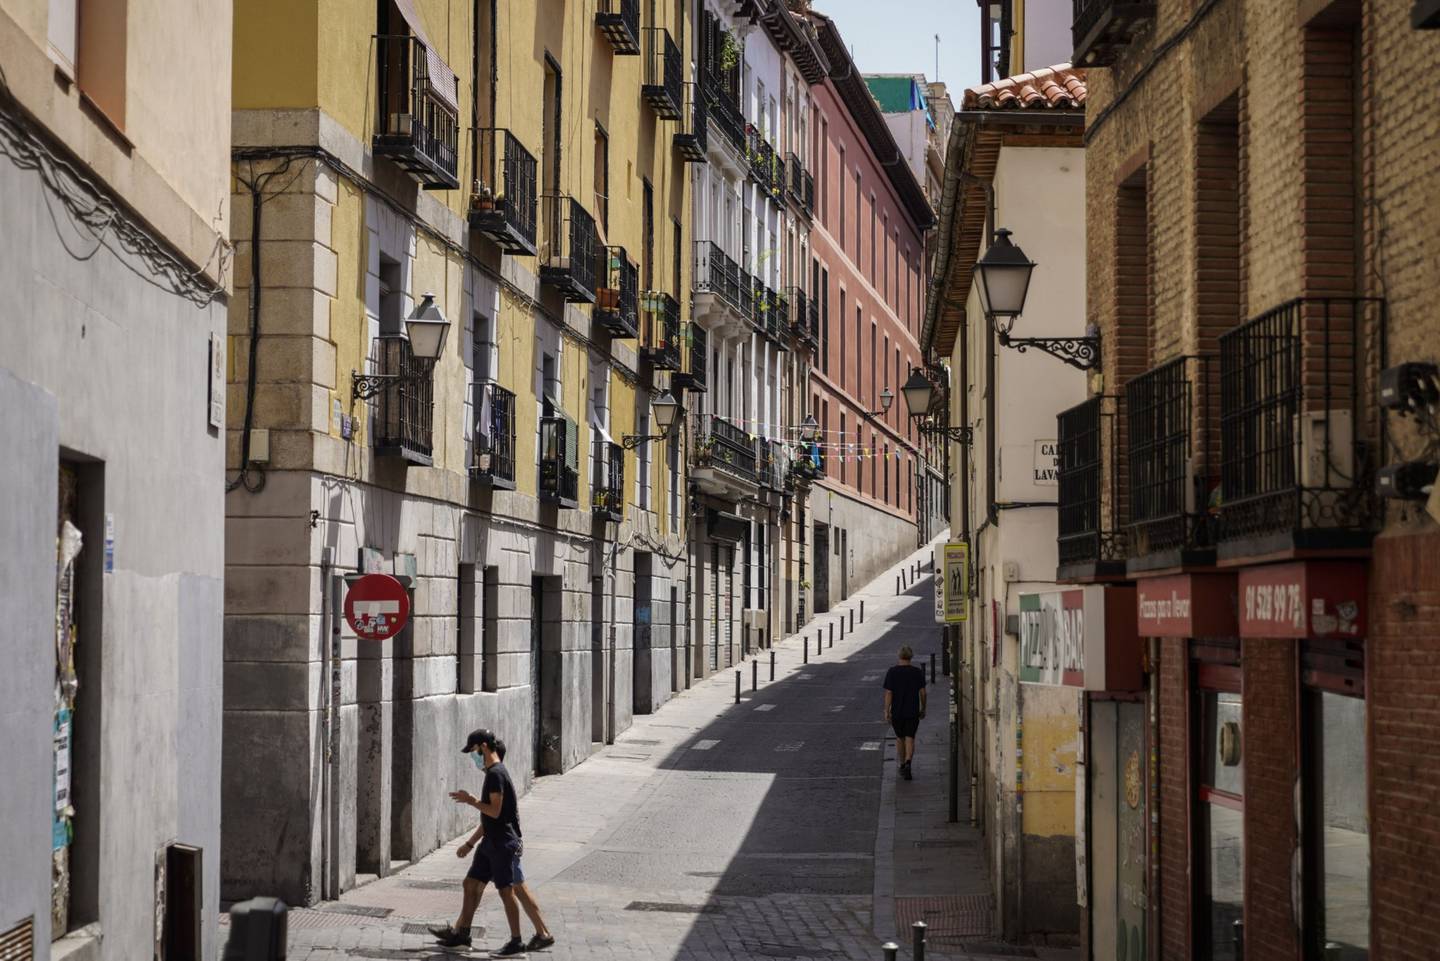 Bloques de apartamentos residenciales se alinean en una calle en el barrio de Lavapiés de Madrid, España, el jueves 25 de junio de 2020. Fotógrafo: Paul Hanna/Bloombergdfd